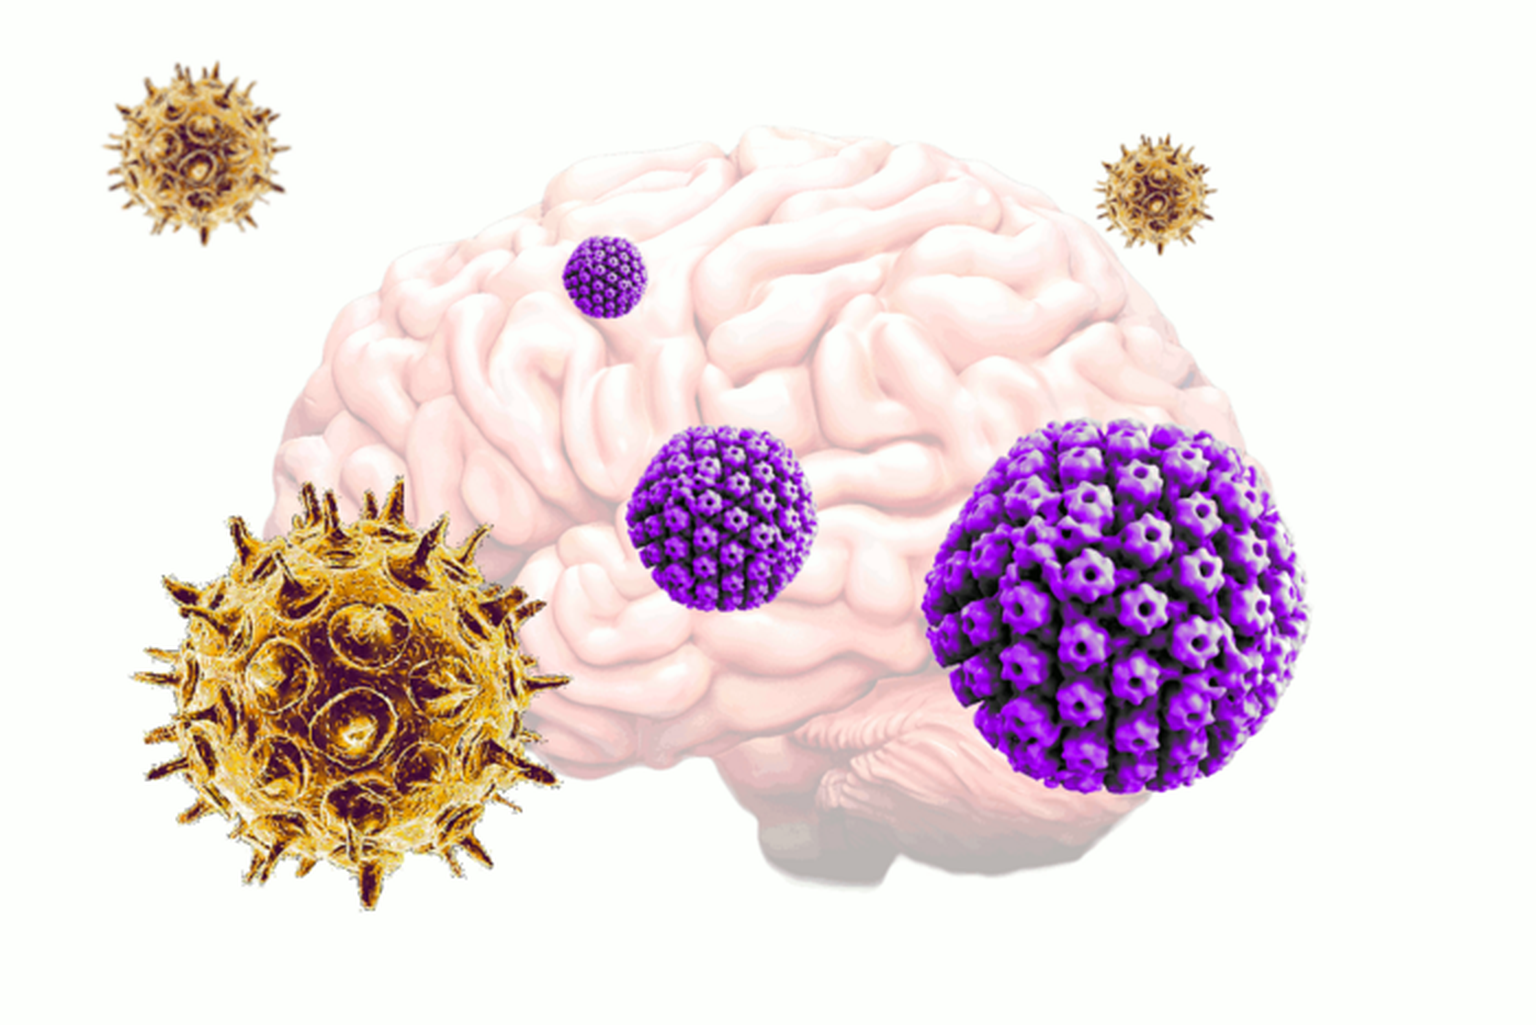 Tuulerõugeid ja vöötohatist põhjustav Herpesvaricellae-zoster viirus (VZV) võib aktiveerida tavalist herpest ehk ohatist põhjustava herpes simplexi (HSV) viiruse ning käivitada nii ka Alzheimeri tõve tekke.